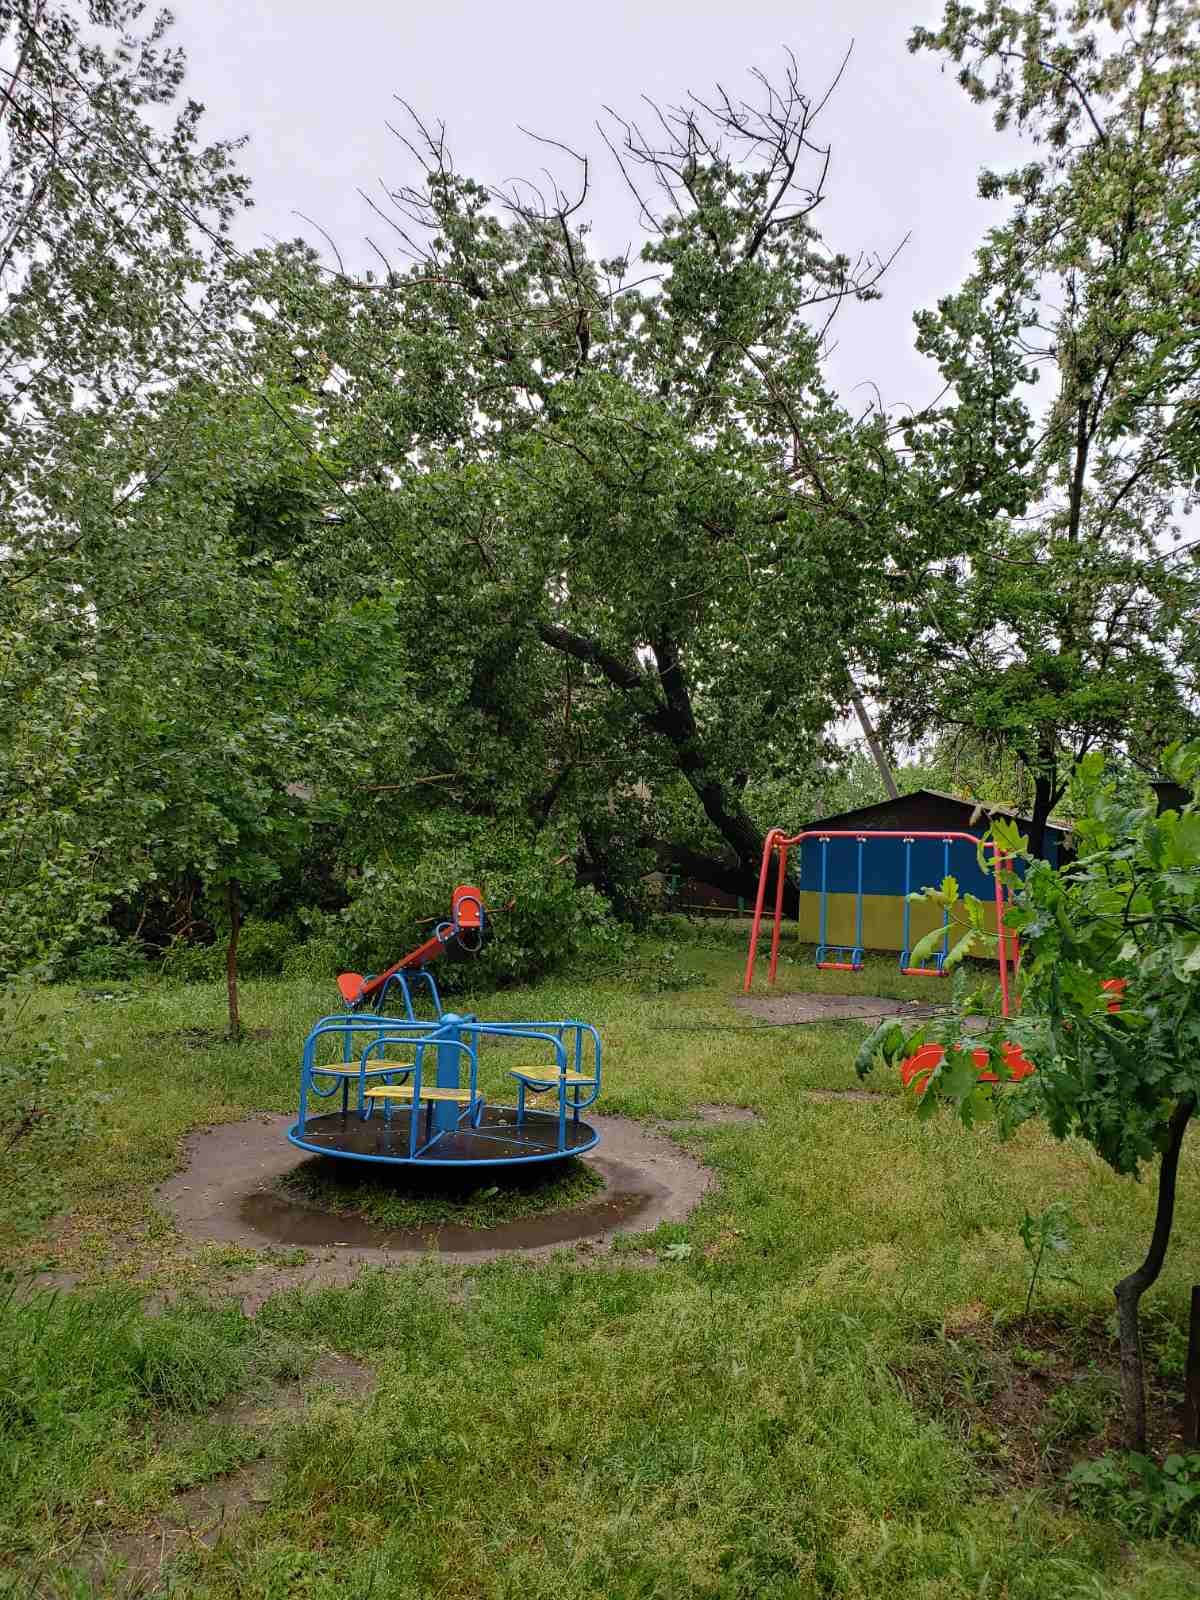 Дерево повисло на проводах рядом с детской площадкой